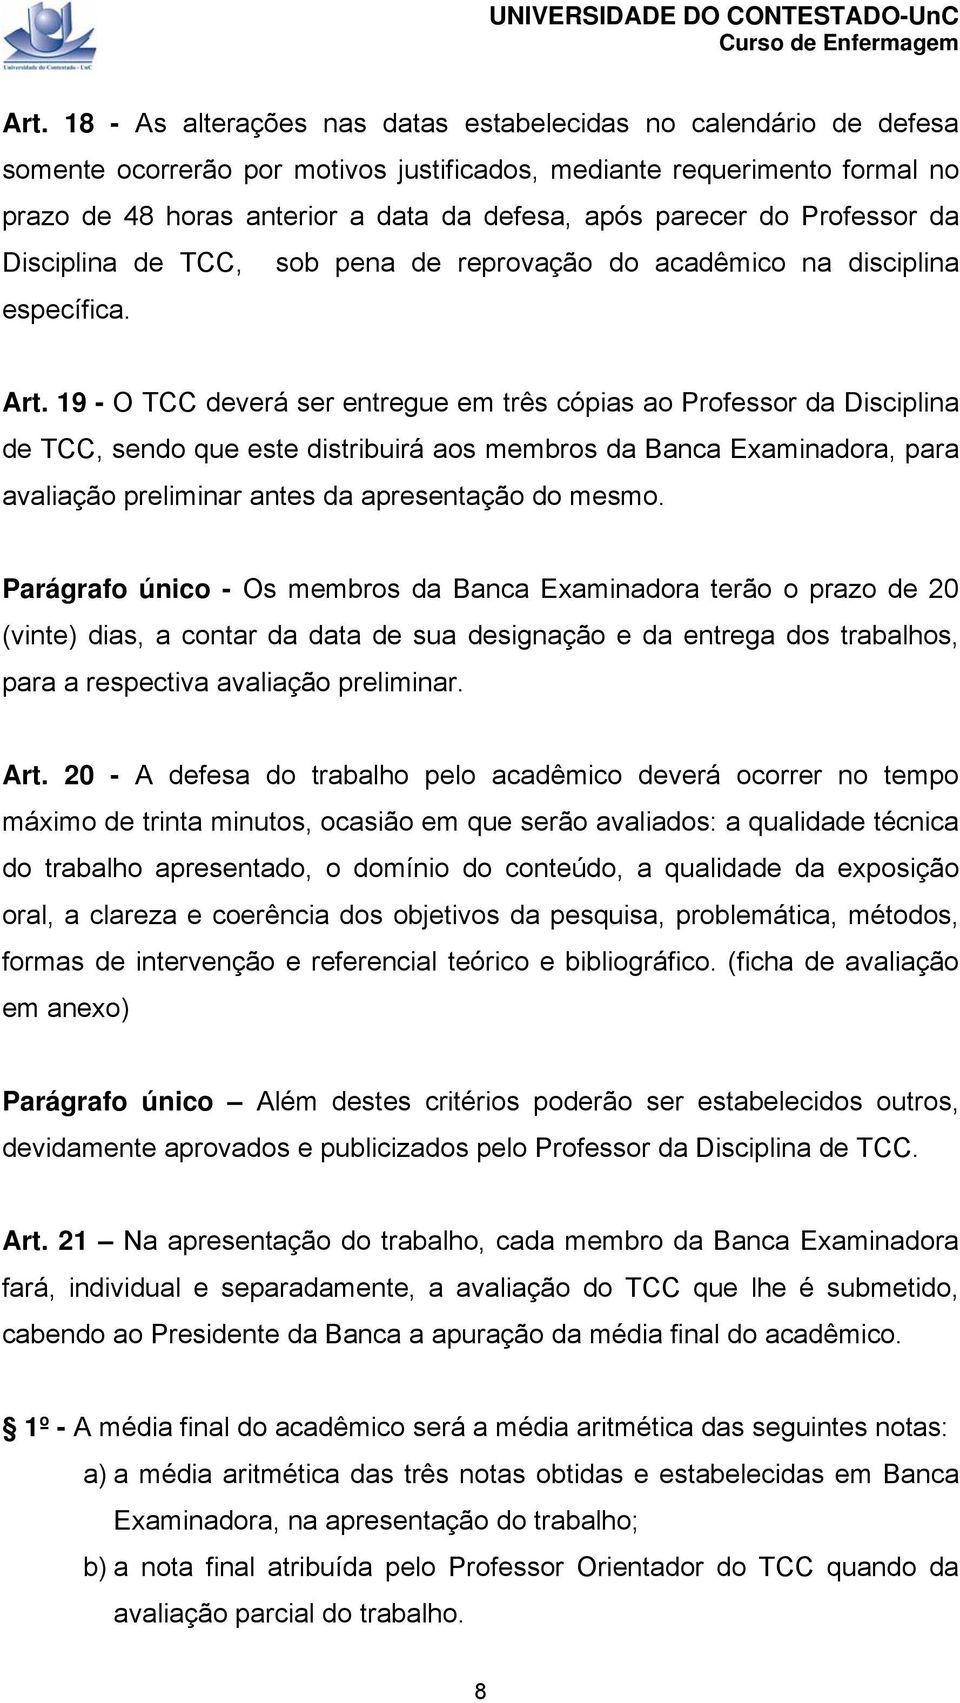 19 - O TCC deverá ser entregue em três cópias ao Professor da Disciplina de TCC, sendo que este distribuirá aos membros da Banca Examinadora, para avaliação preliminar antes da apresentação do mesmo.